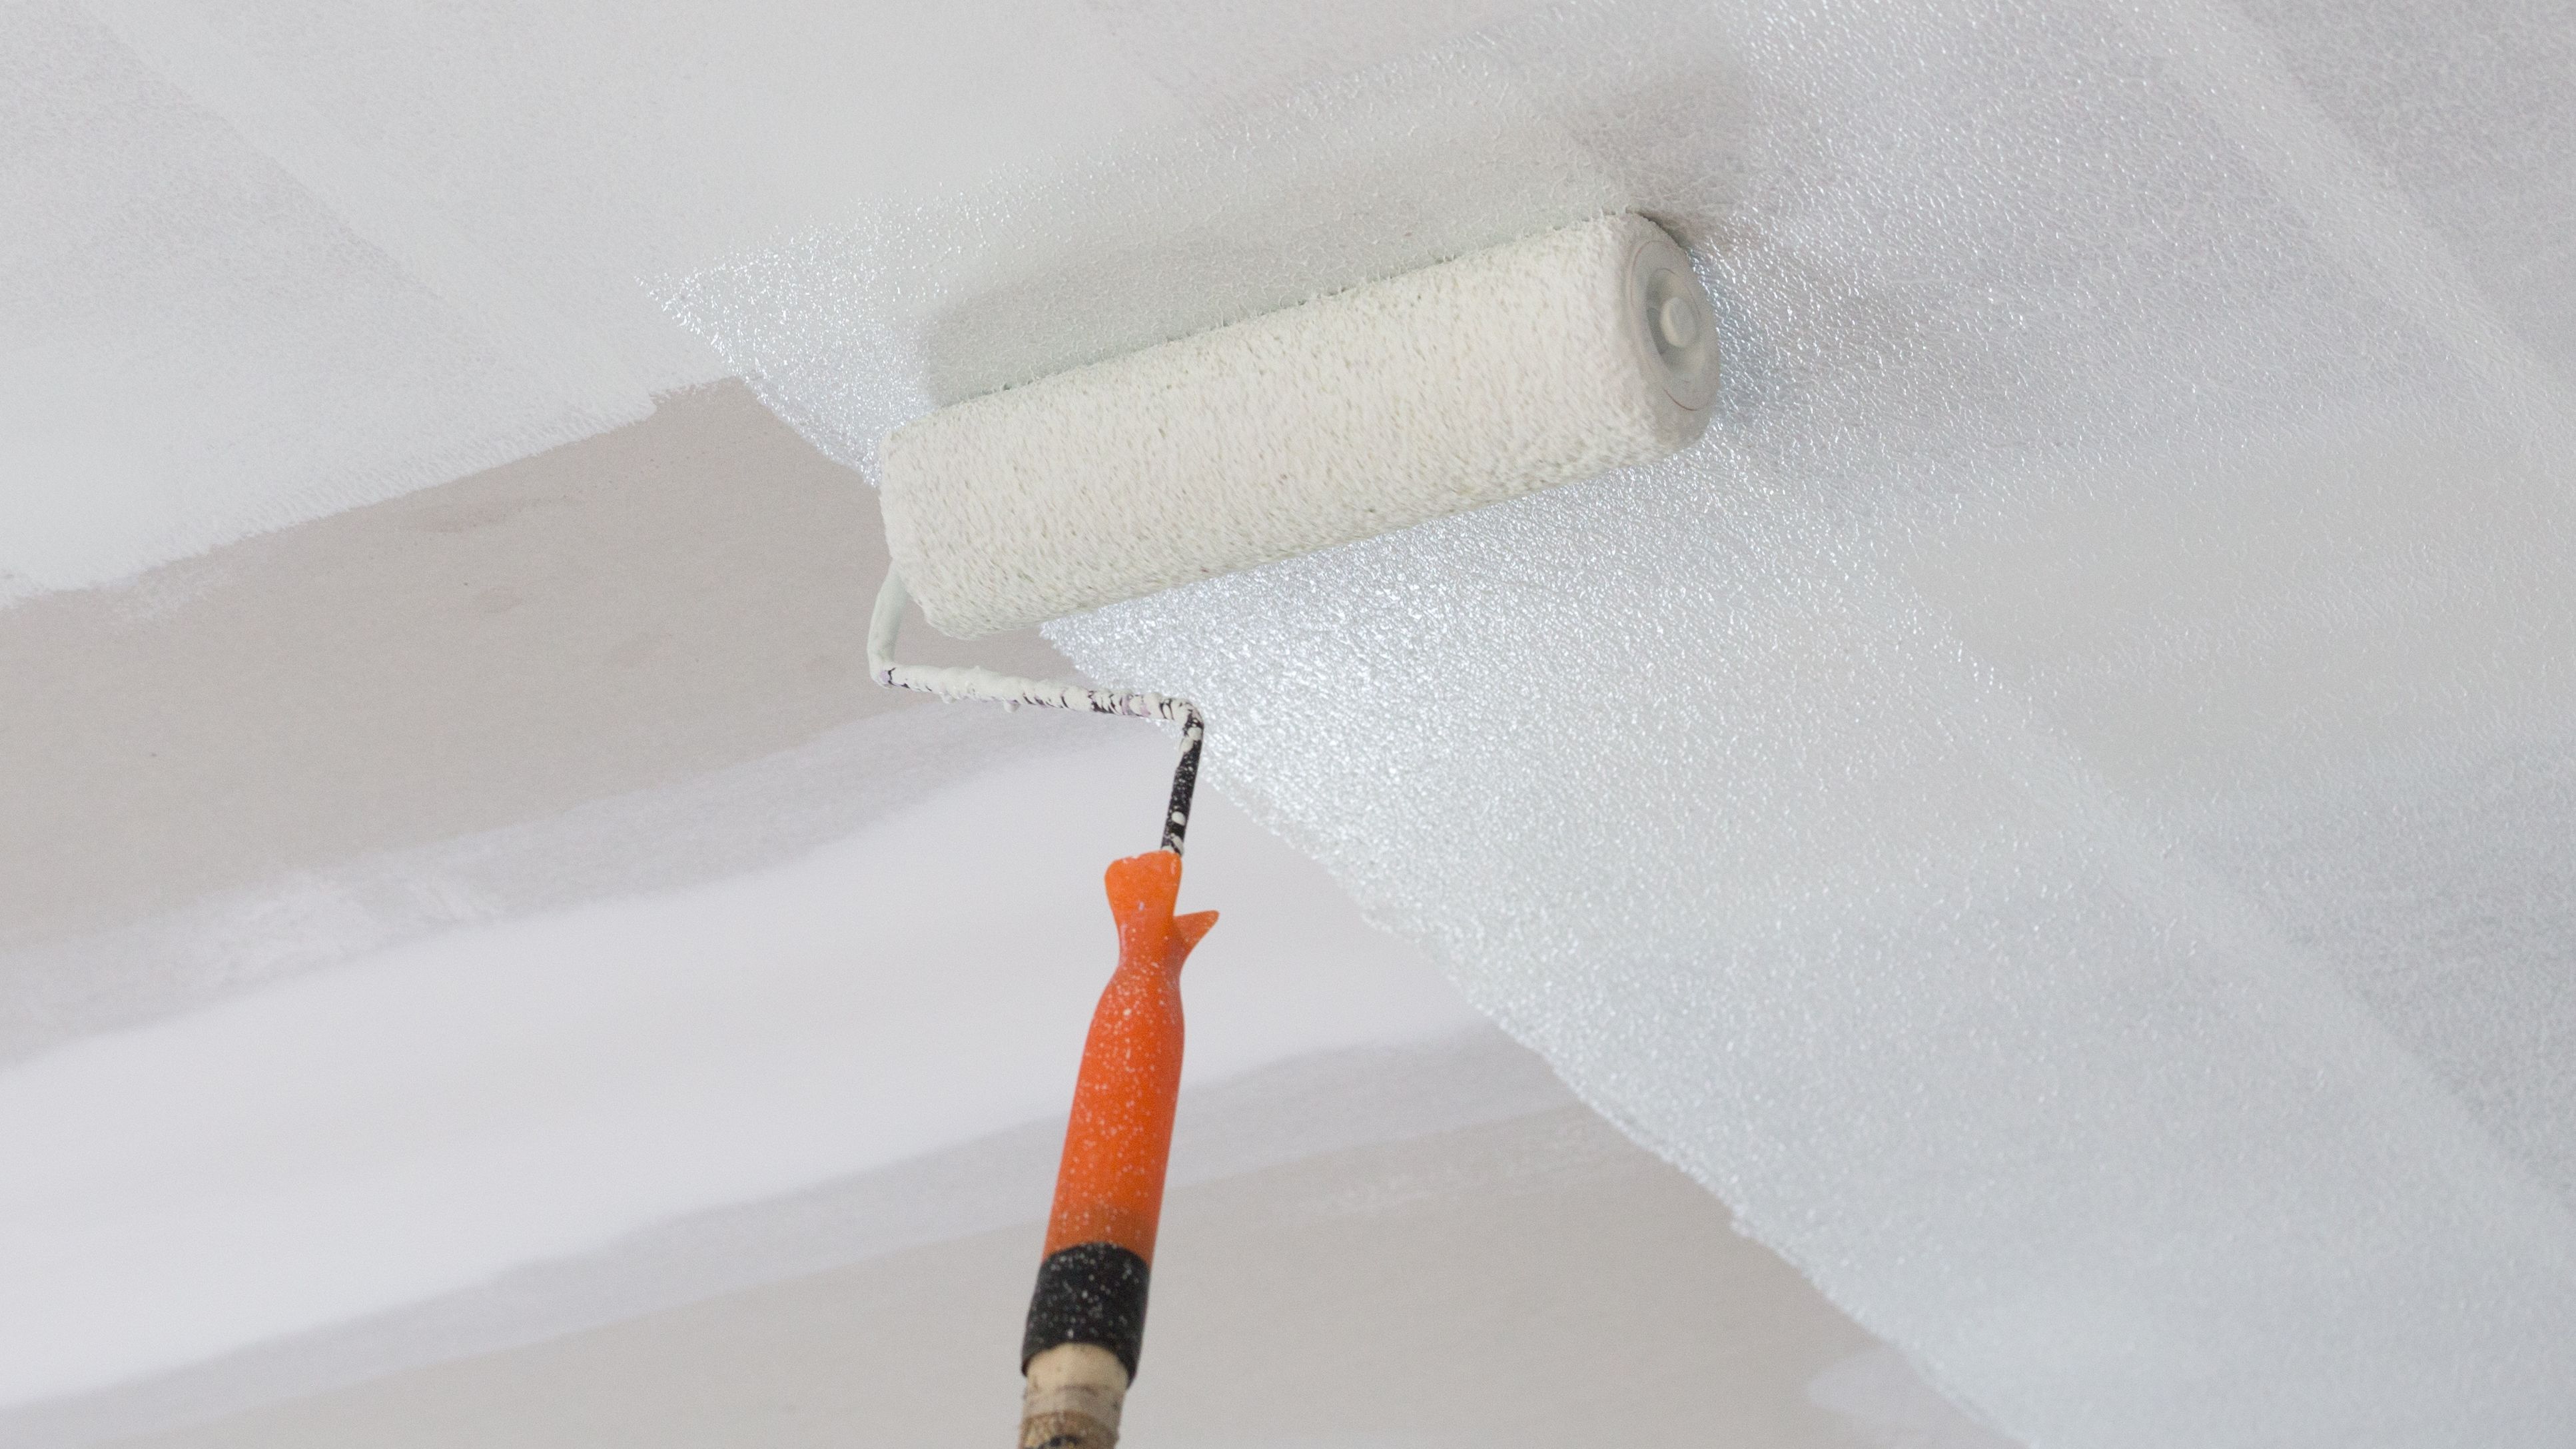 Comment peindre un plafond placo plâtre ?